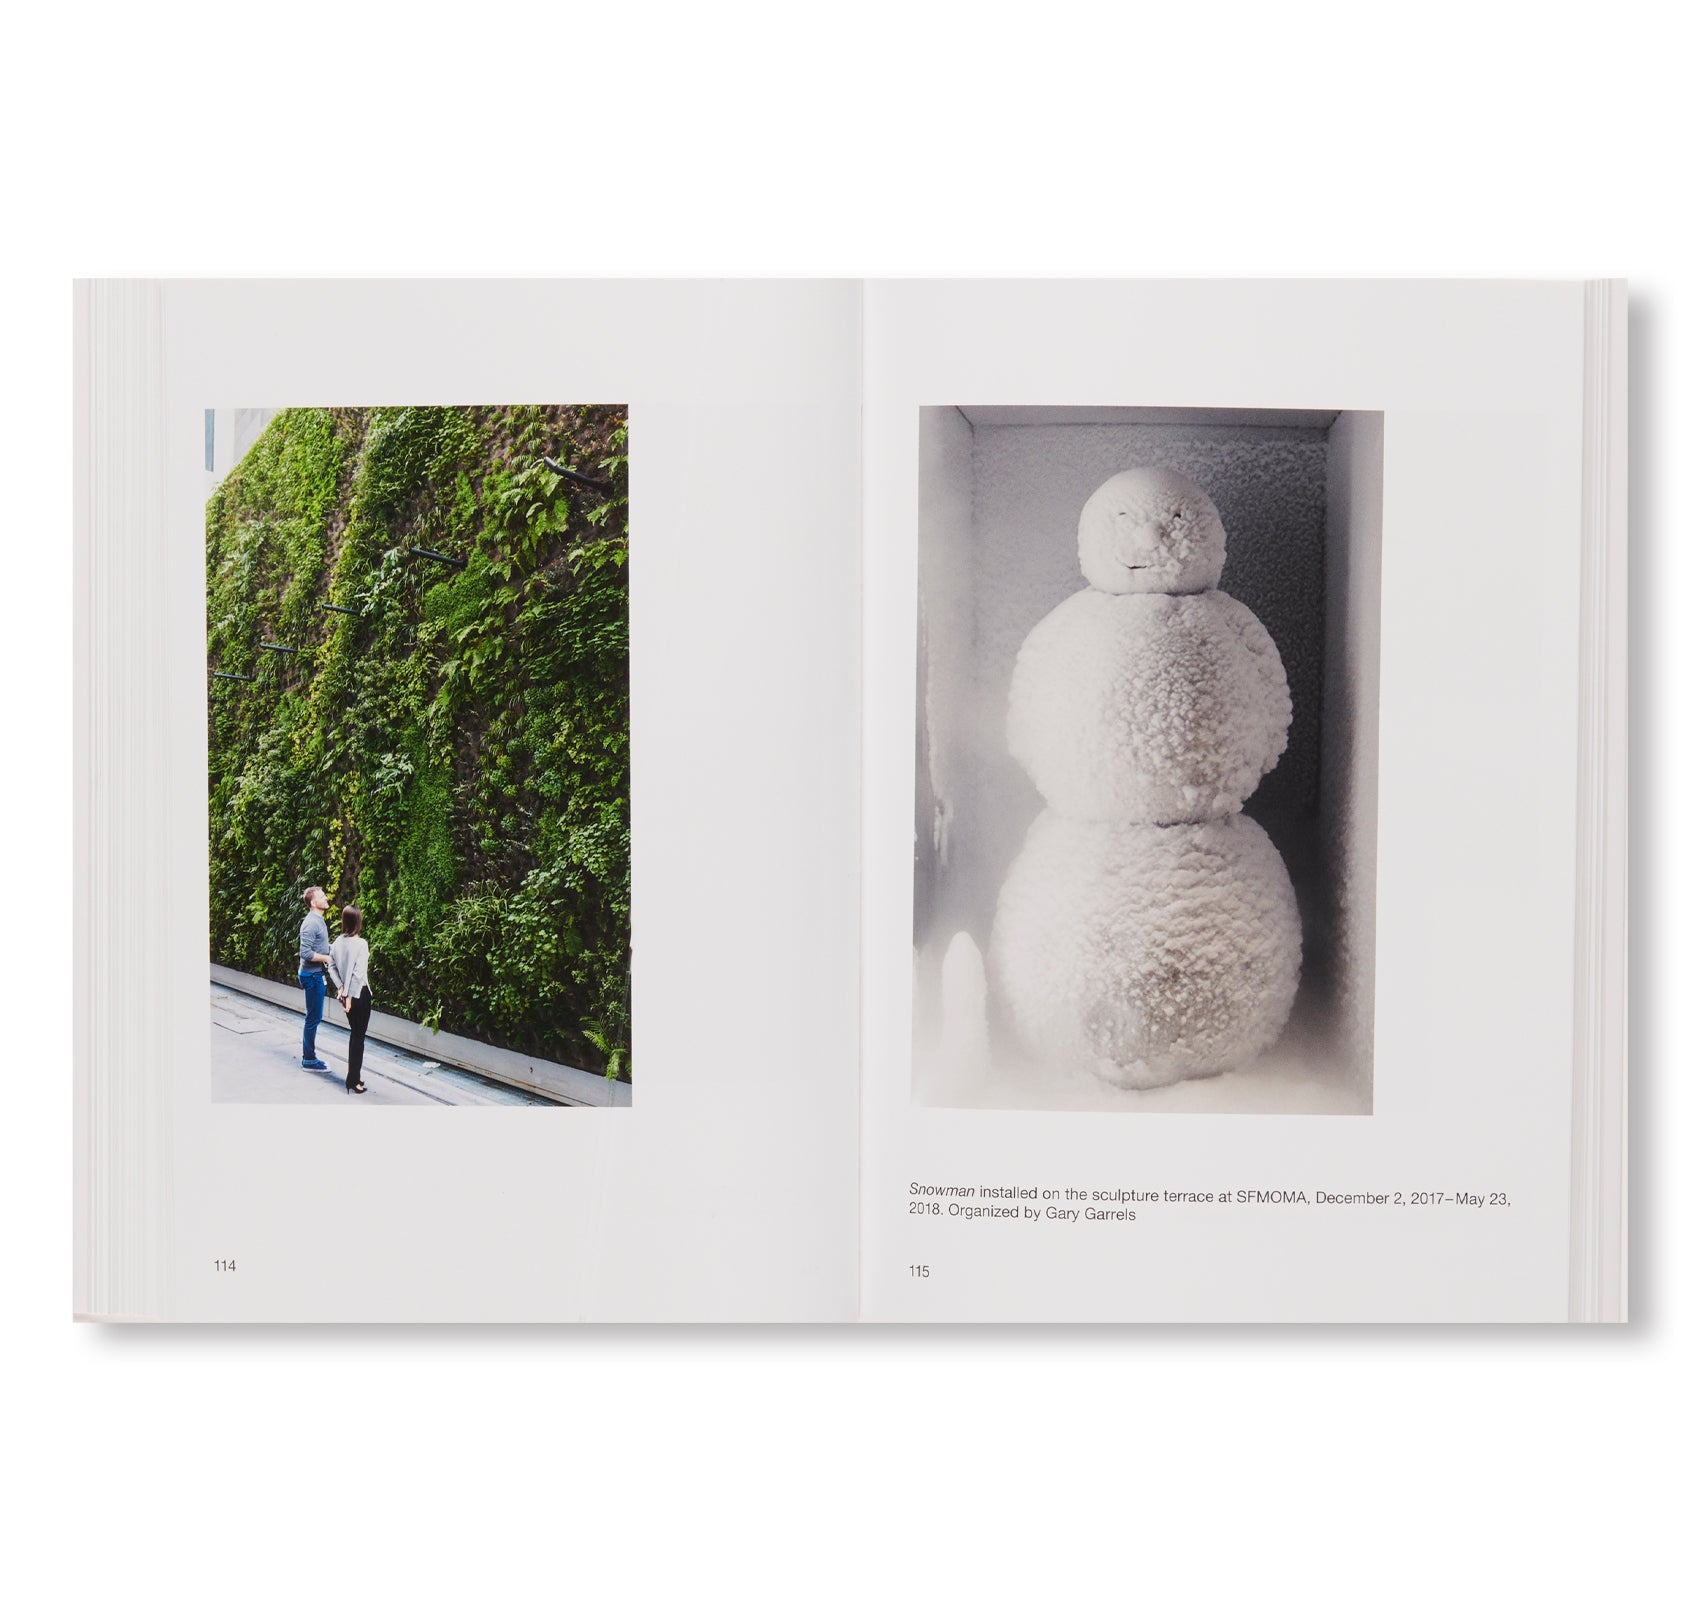 SNOWMAN by Peter Fischli & David Weiss